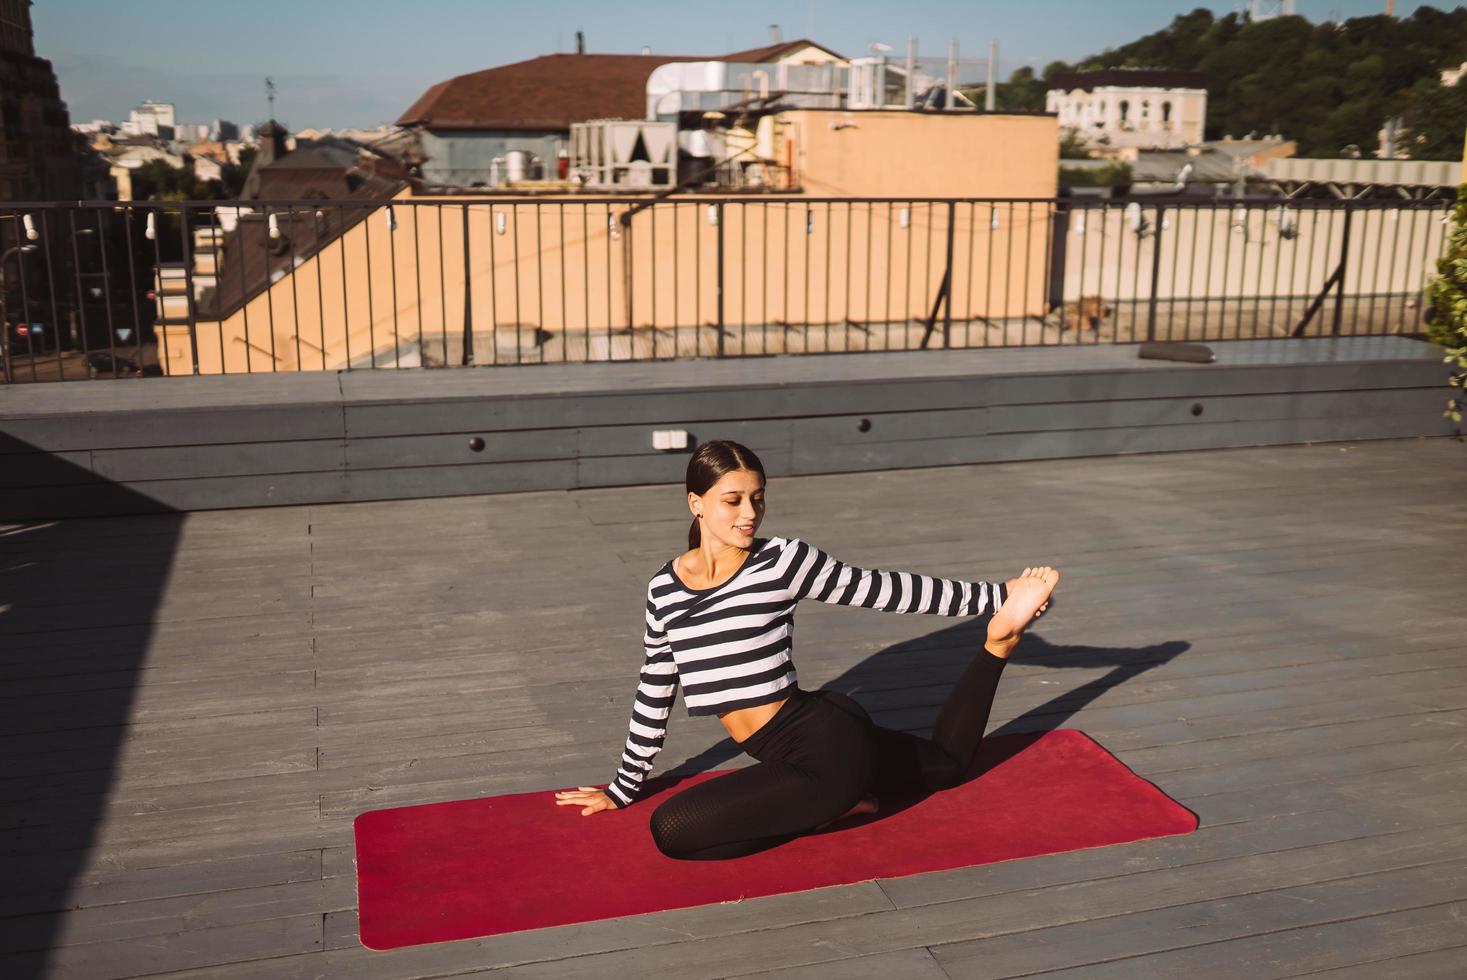 Frau, die am frühen Morgen Yoga-Übungen auf dem Hausdach macht foto